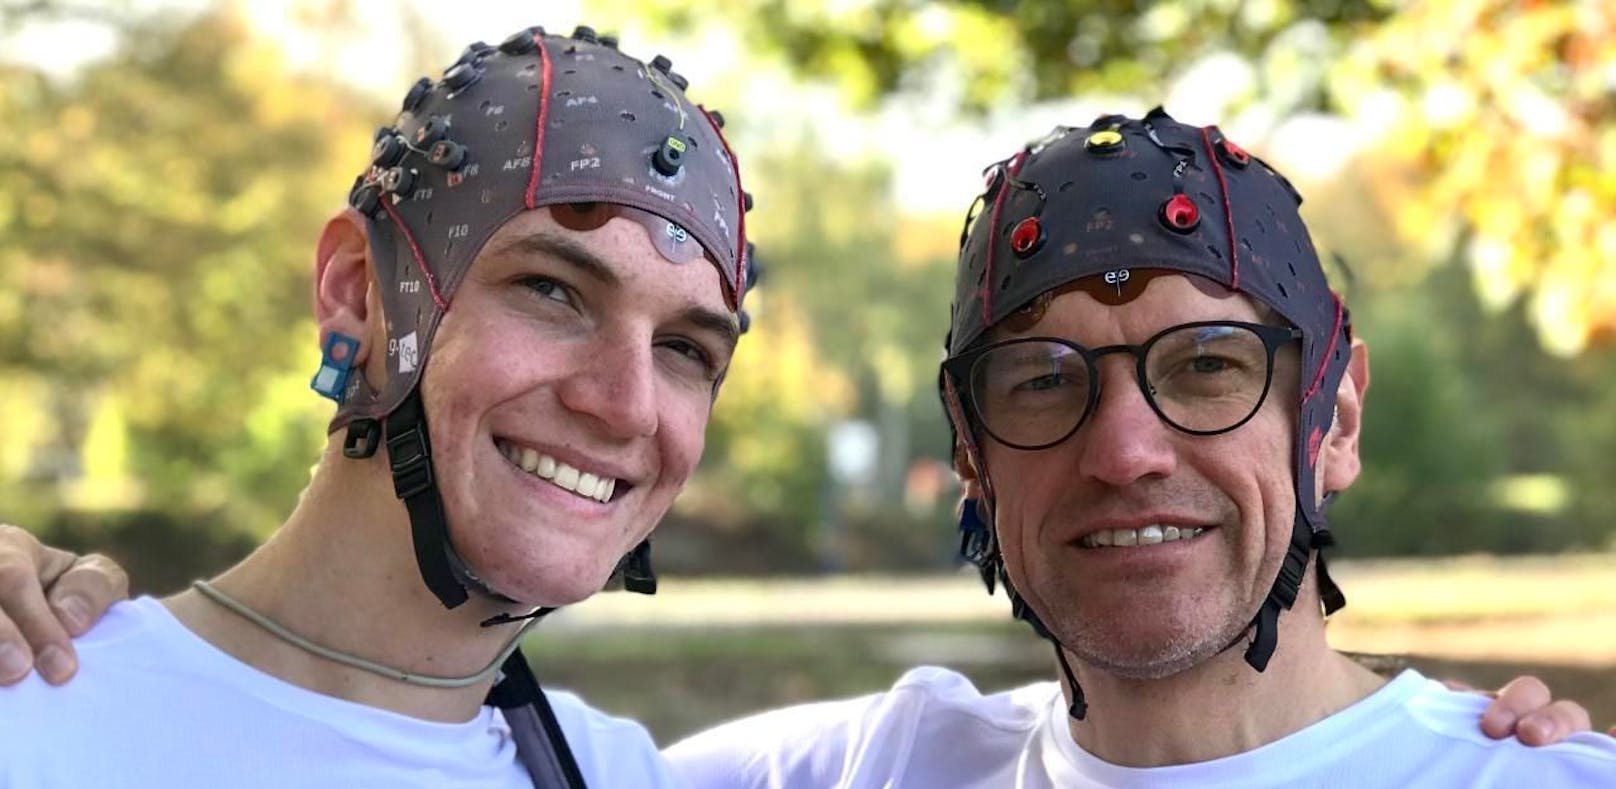 Hugo (18) und Steven Laureys (50) liefen den New-York-Marathon mit einem Gehirn-Scan. 